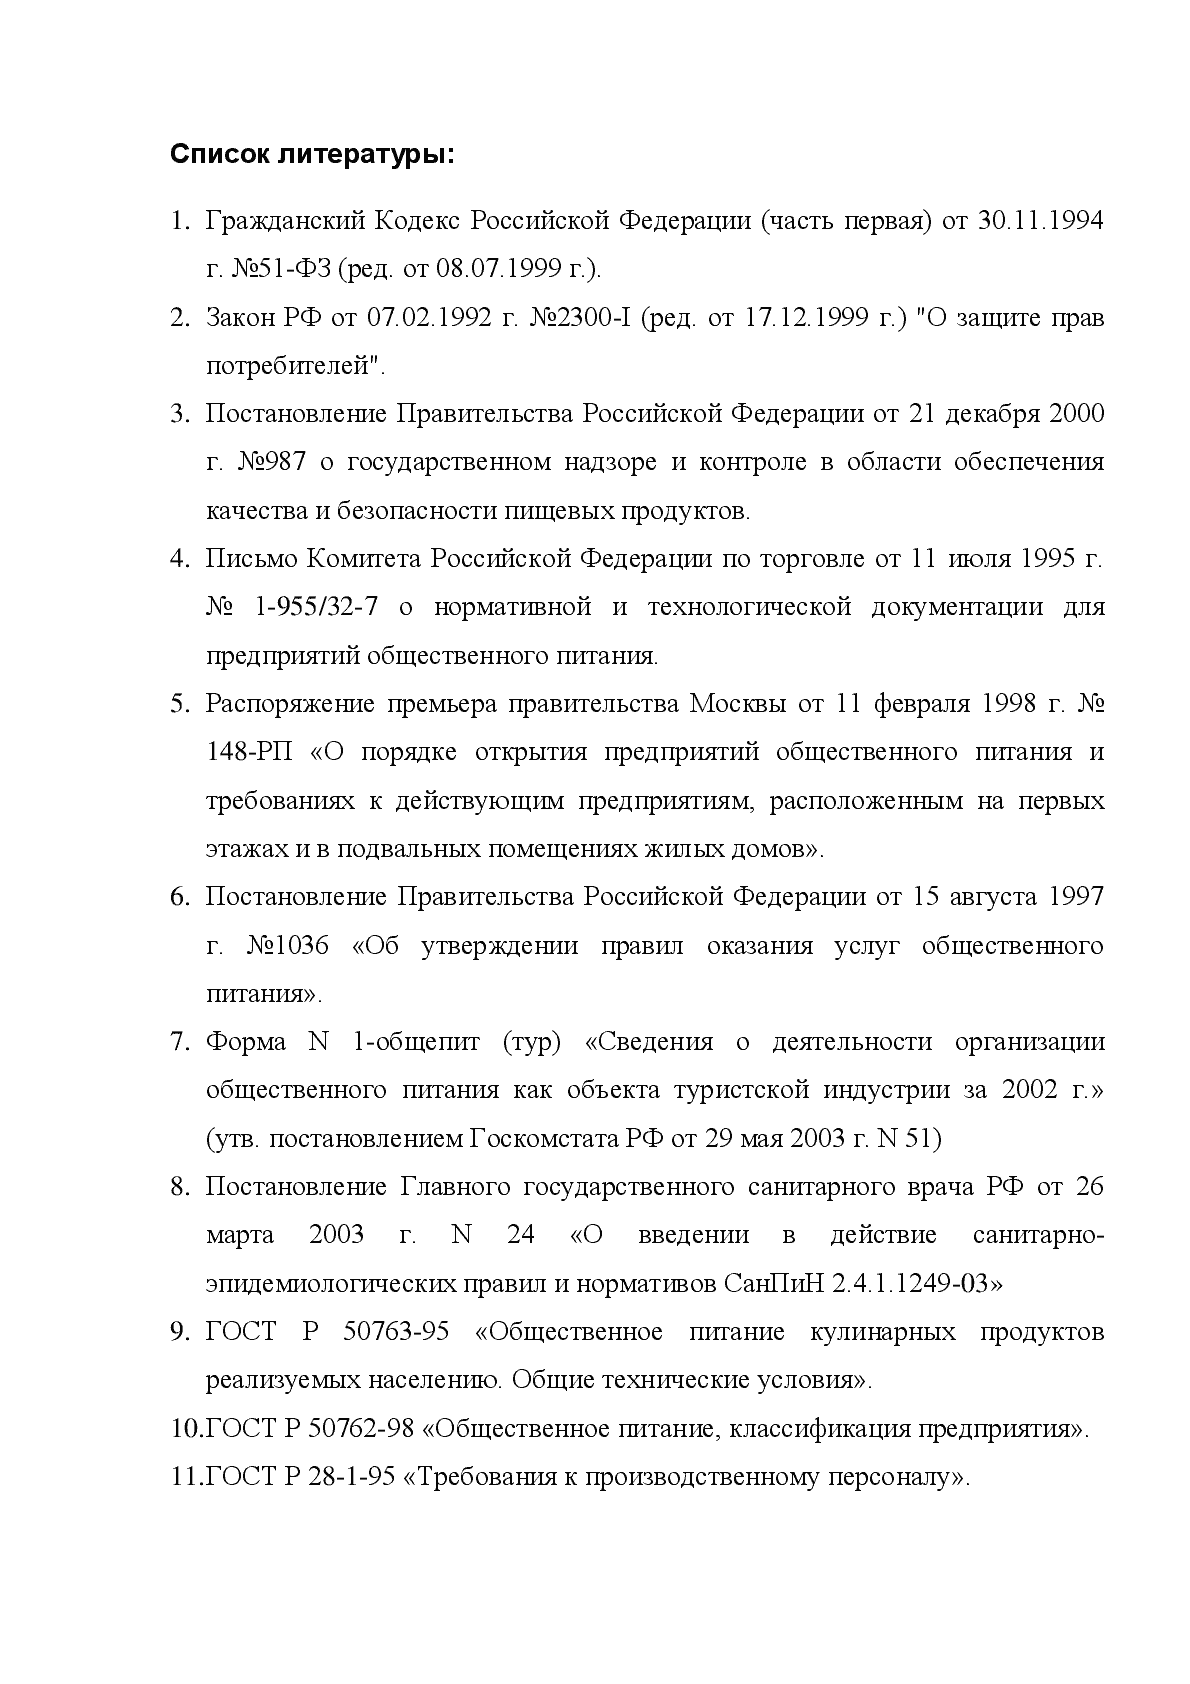 Список литературы ВКР